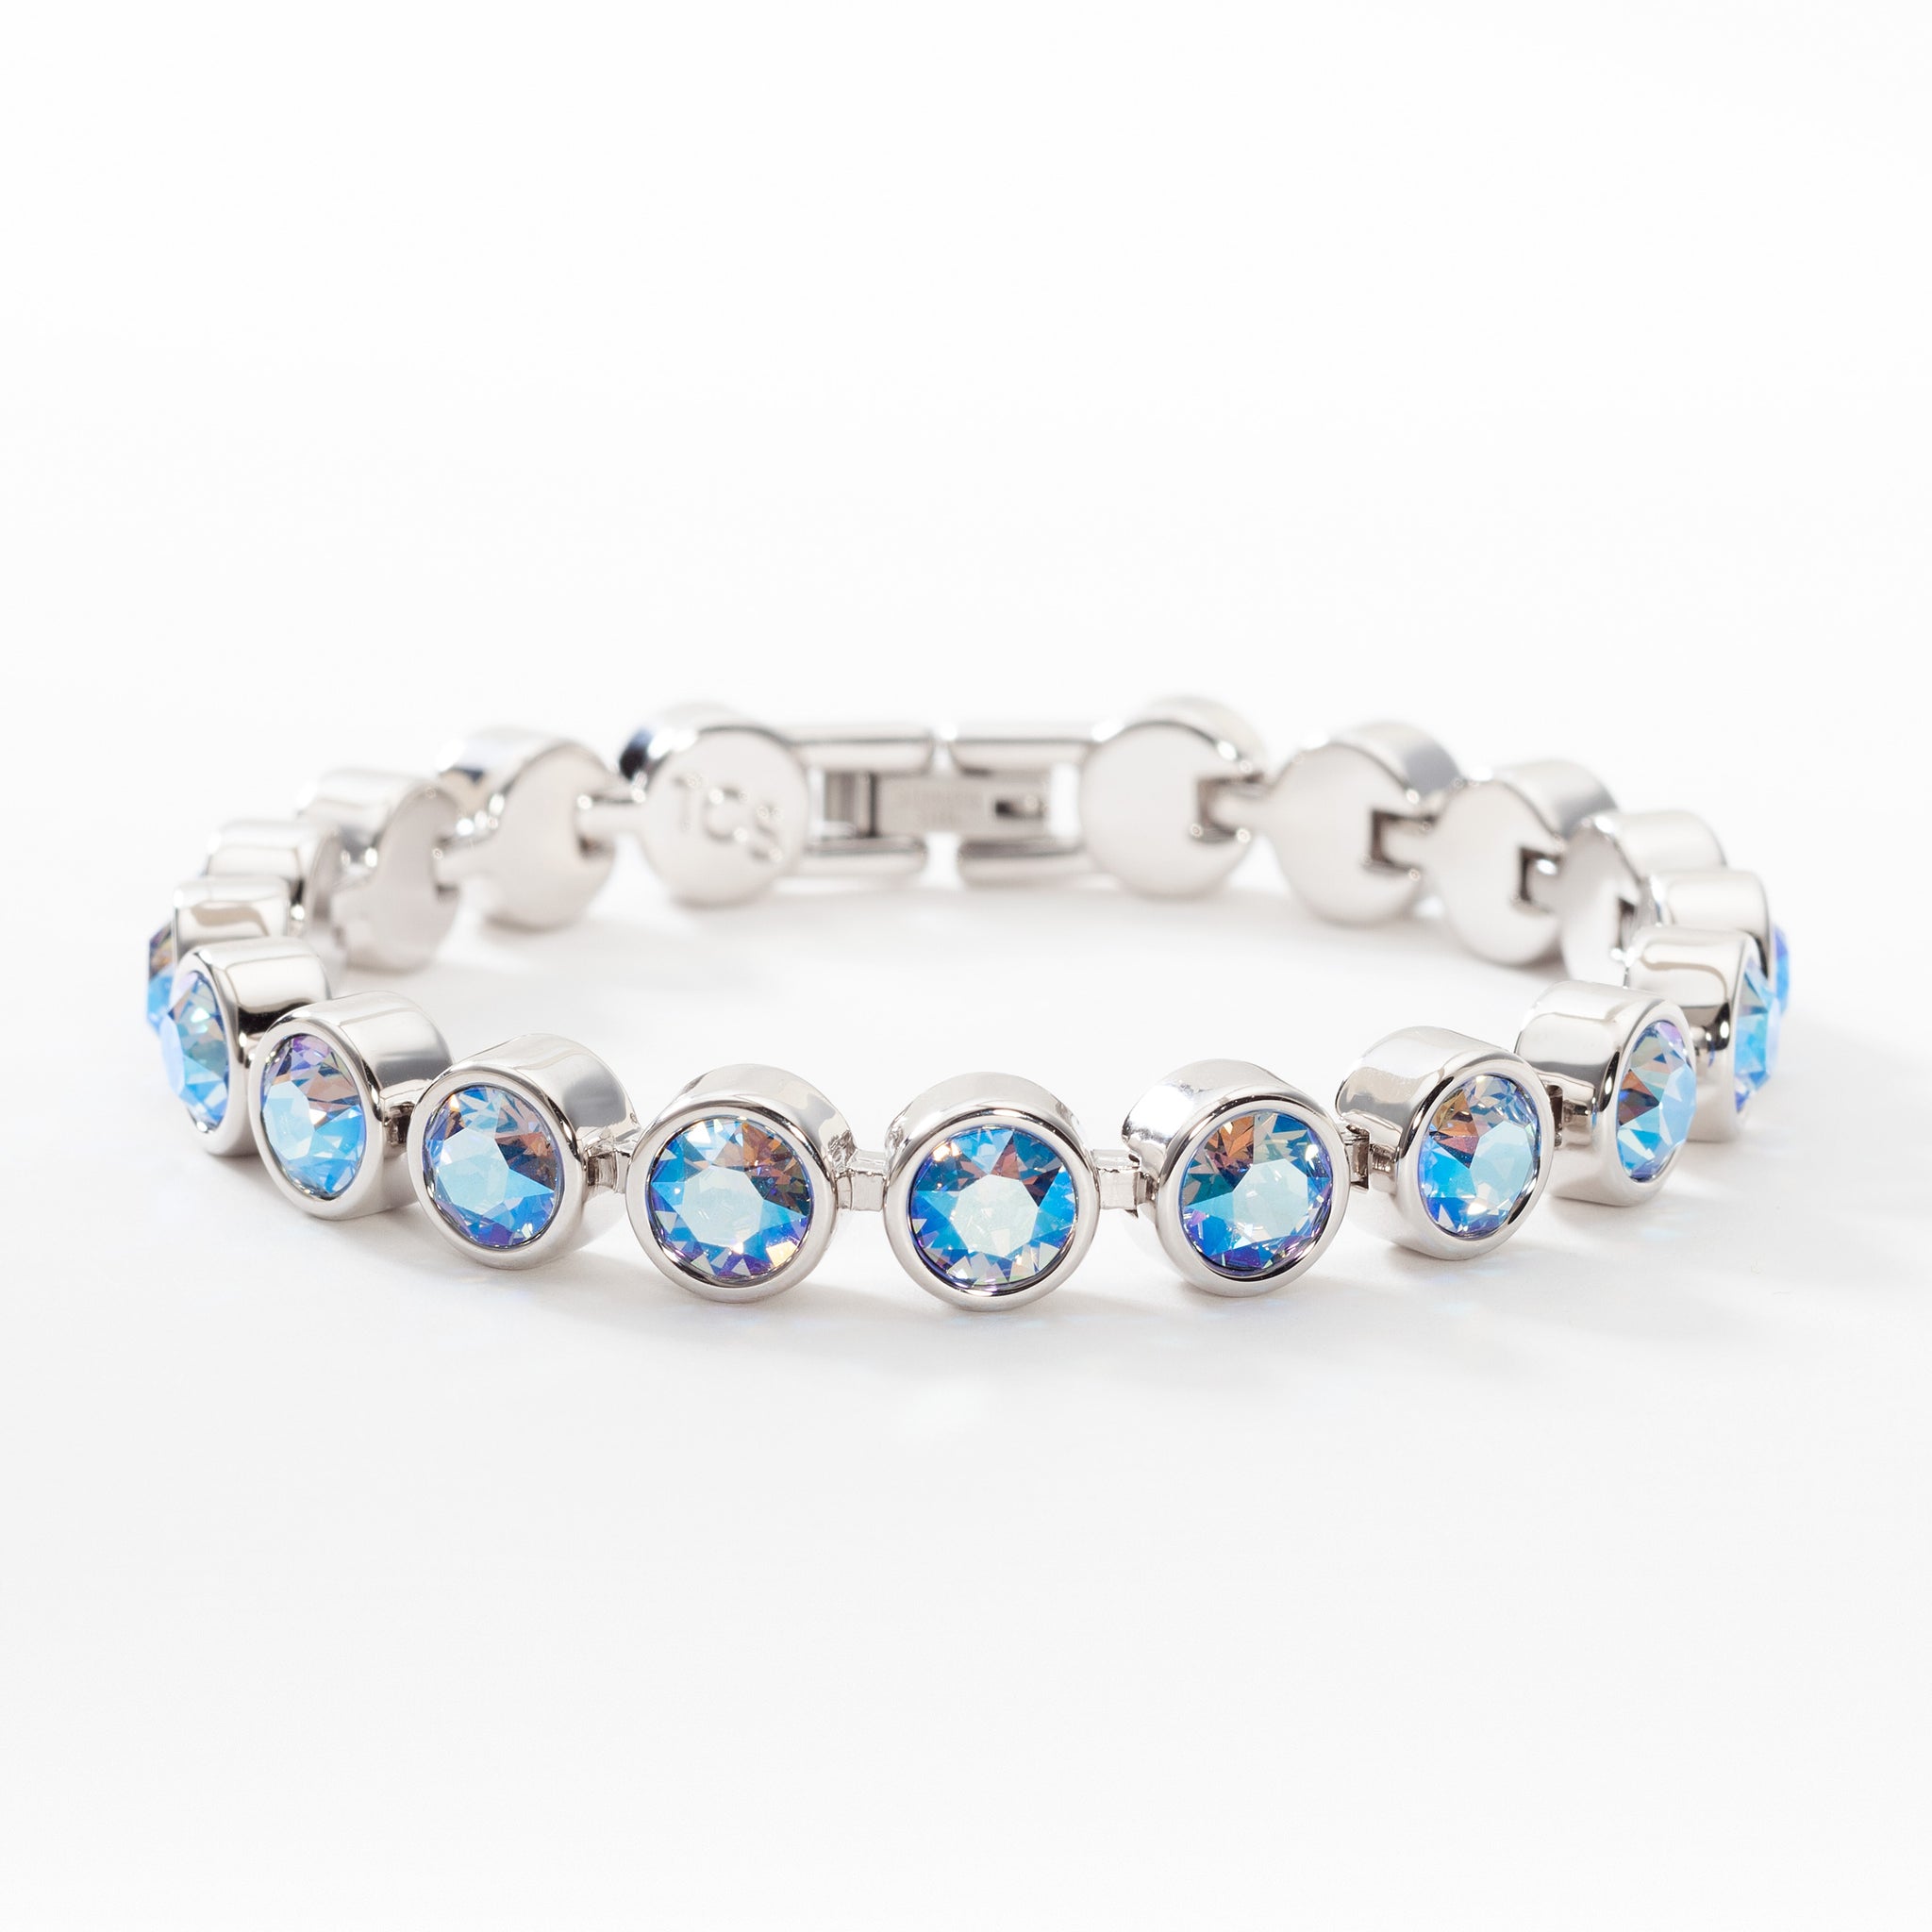 Touchstone Crystal GLAM Bracelet by Swarovski Multi Pastel 714034   9034  eBay